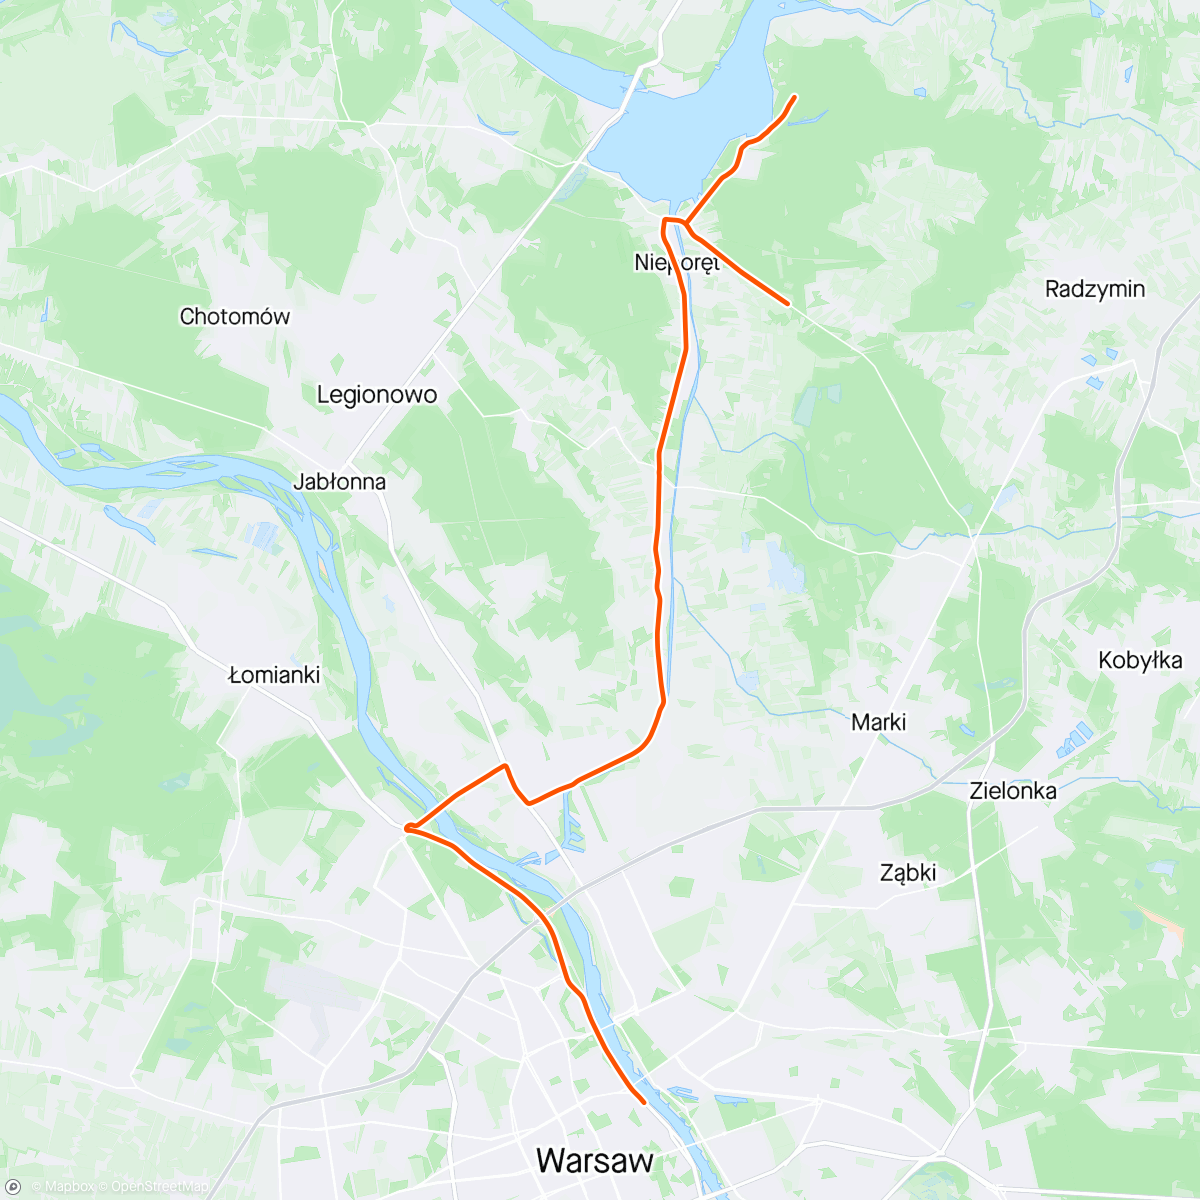 Mapa de la actividad, ROUVY - Warsaw Olympic Triathlon